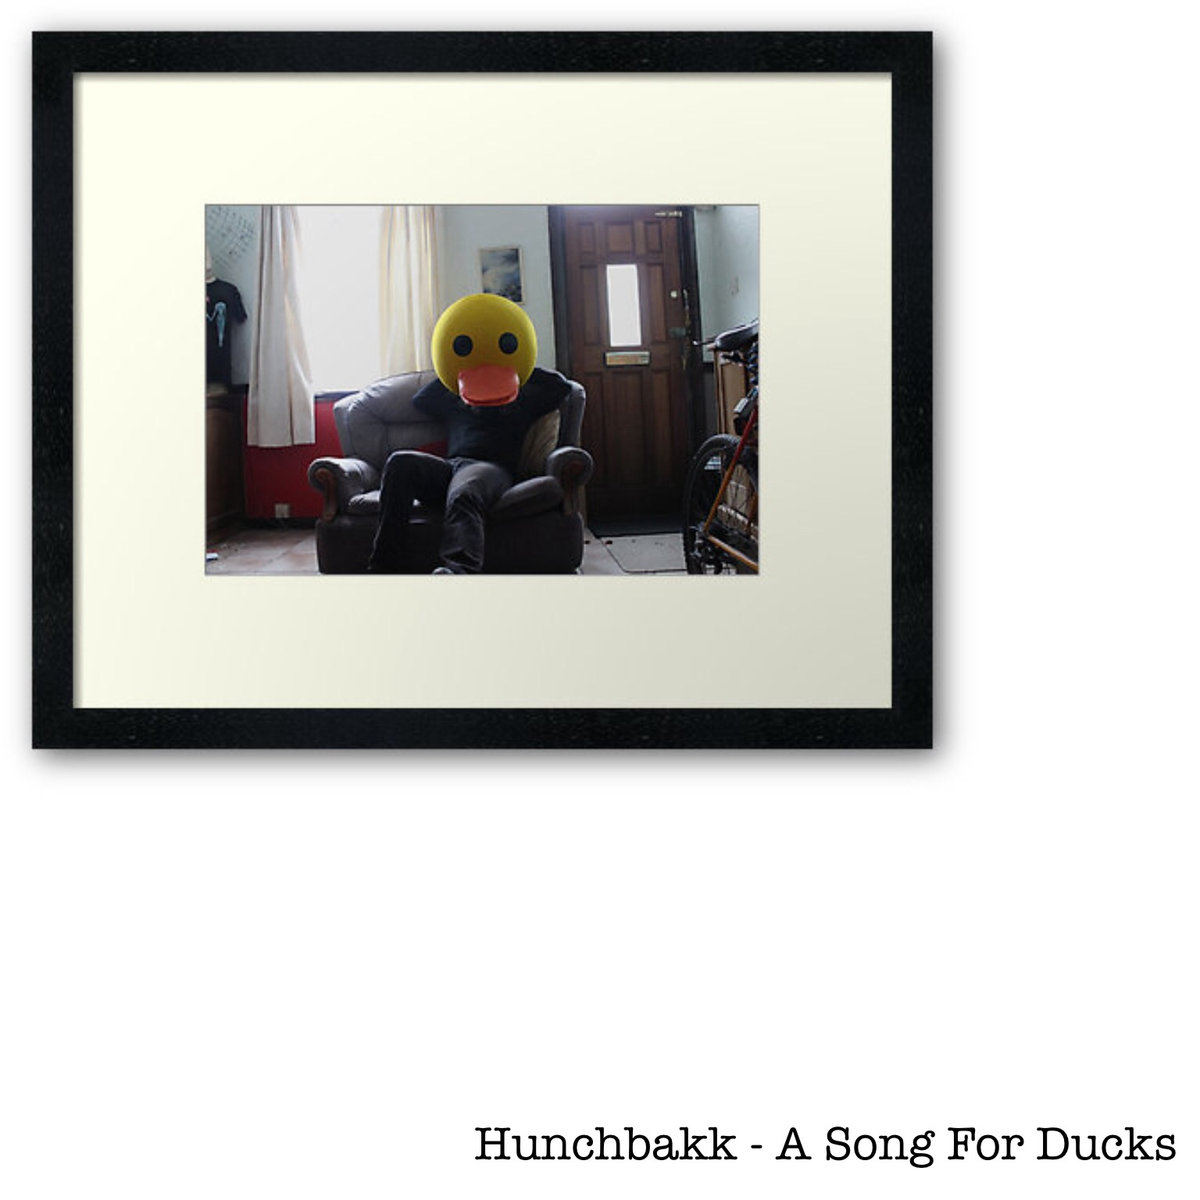 Hunchbakk - A Song For Ducks